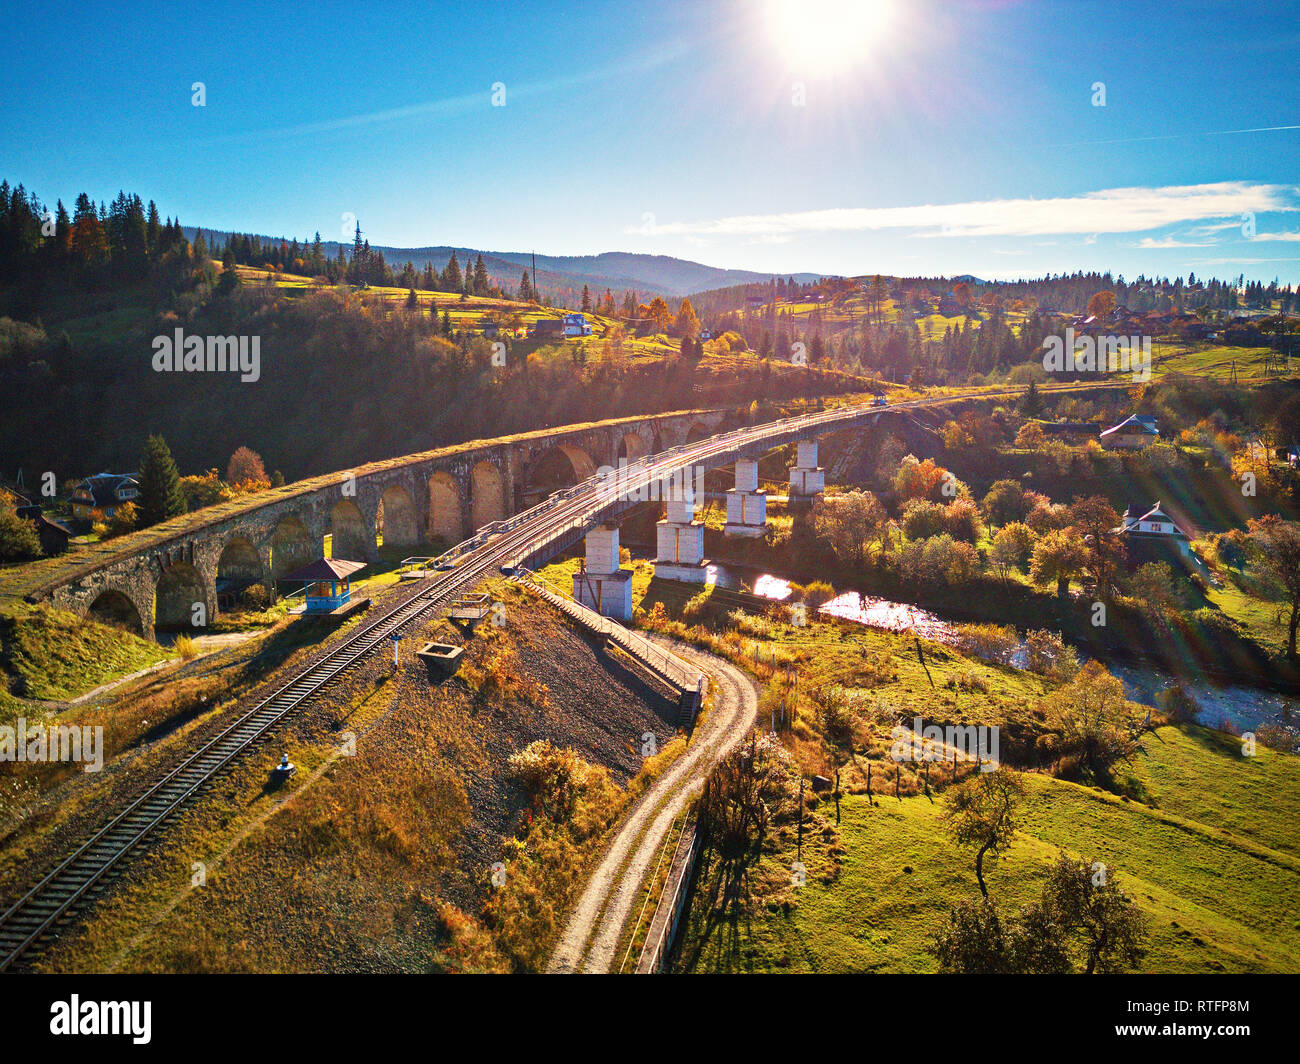 Alte Eisenbahnviadukt in Berge. Herbst Landschaft mit Eisenbahn Viaduct, Dorf Vorohta in den Karpaten. Transkarpatien Stockfoto